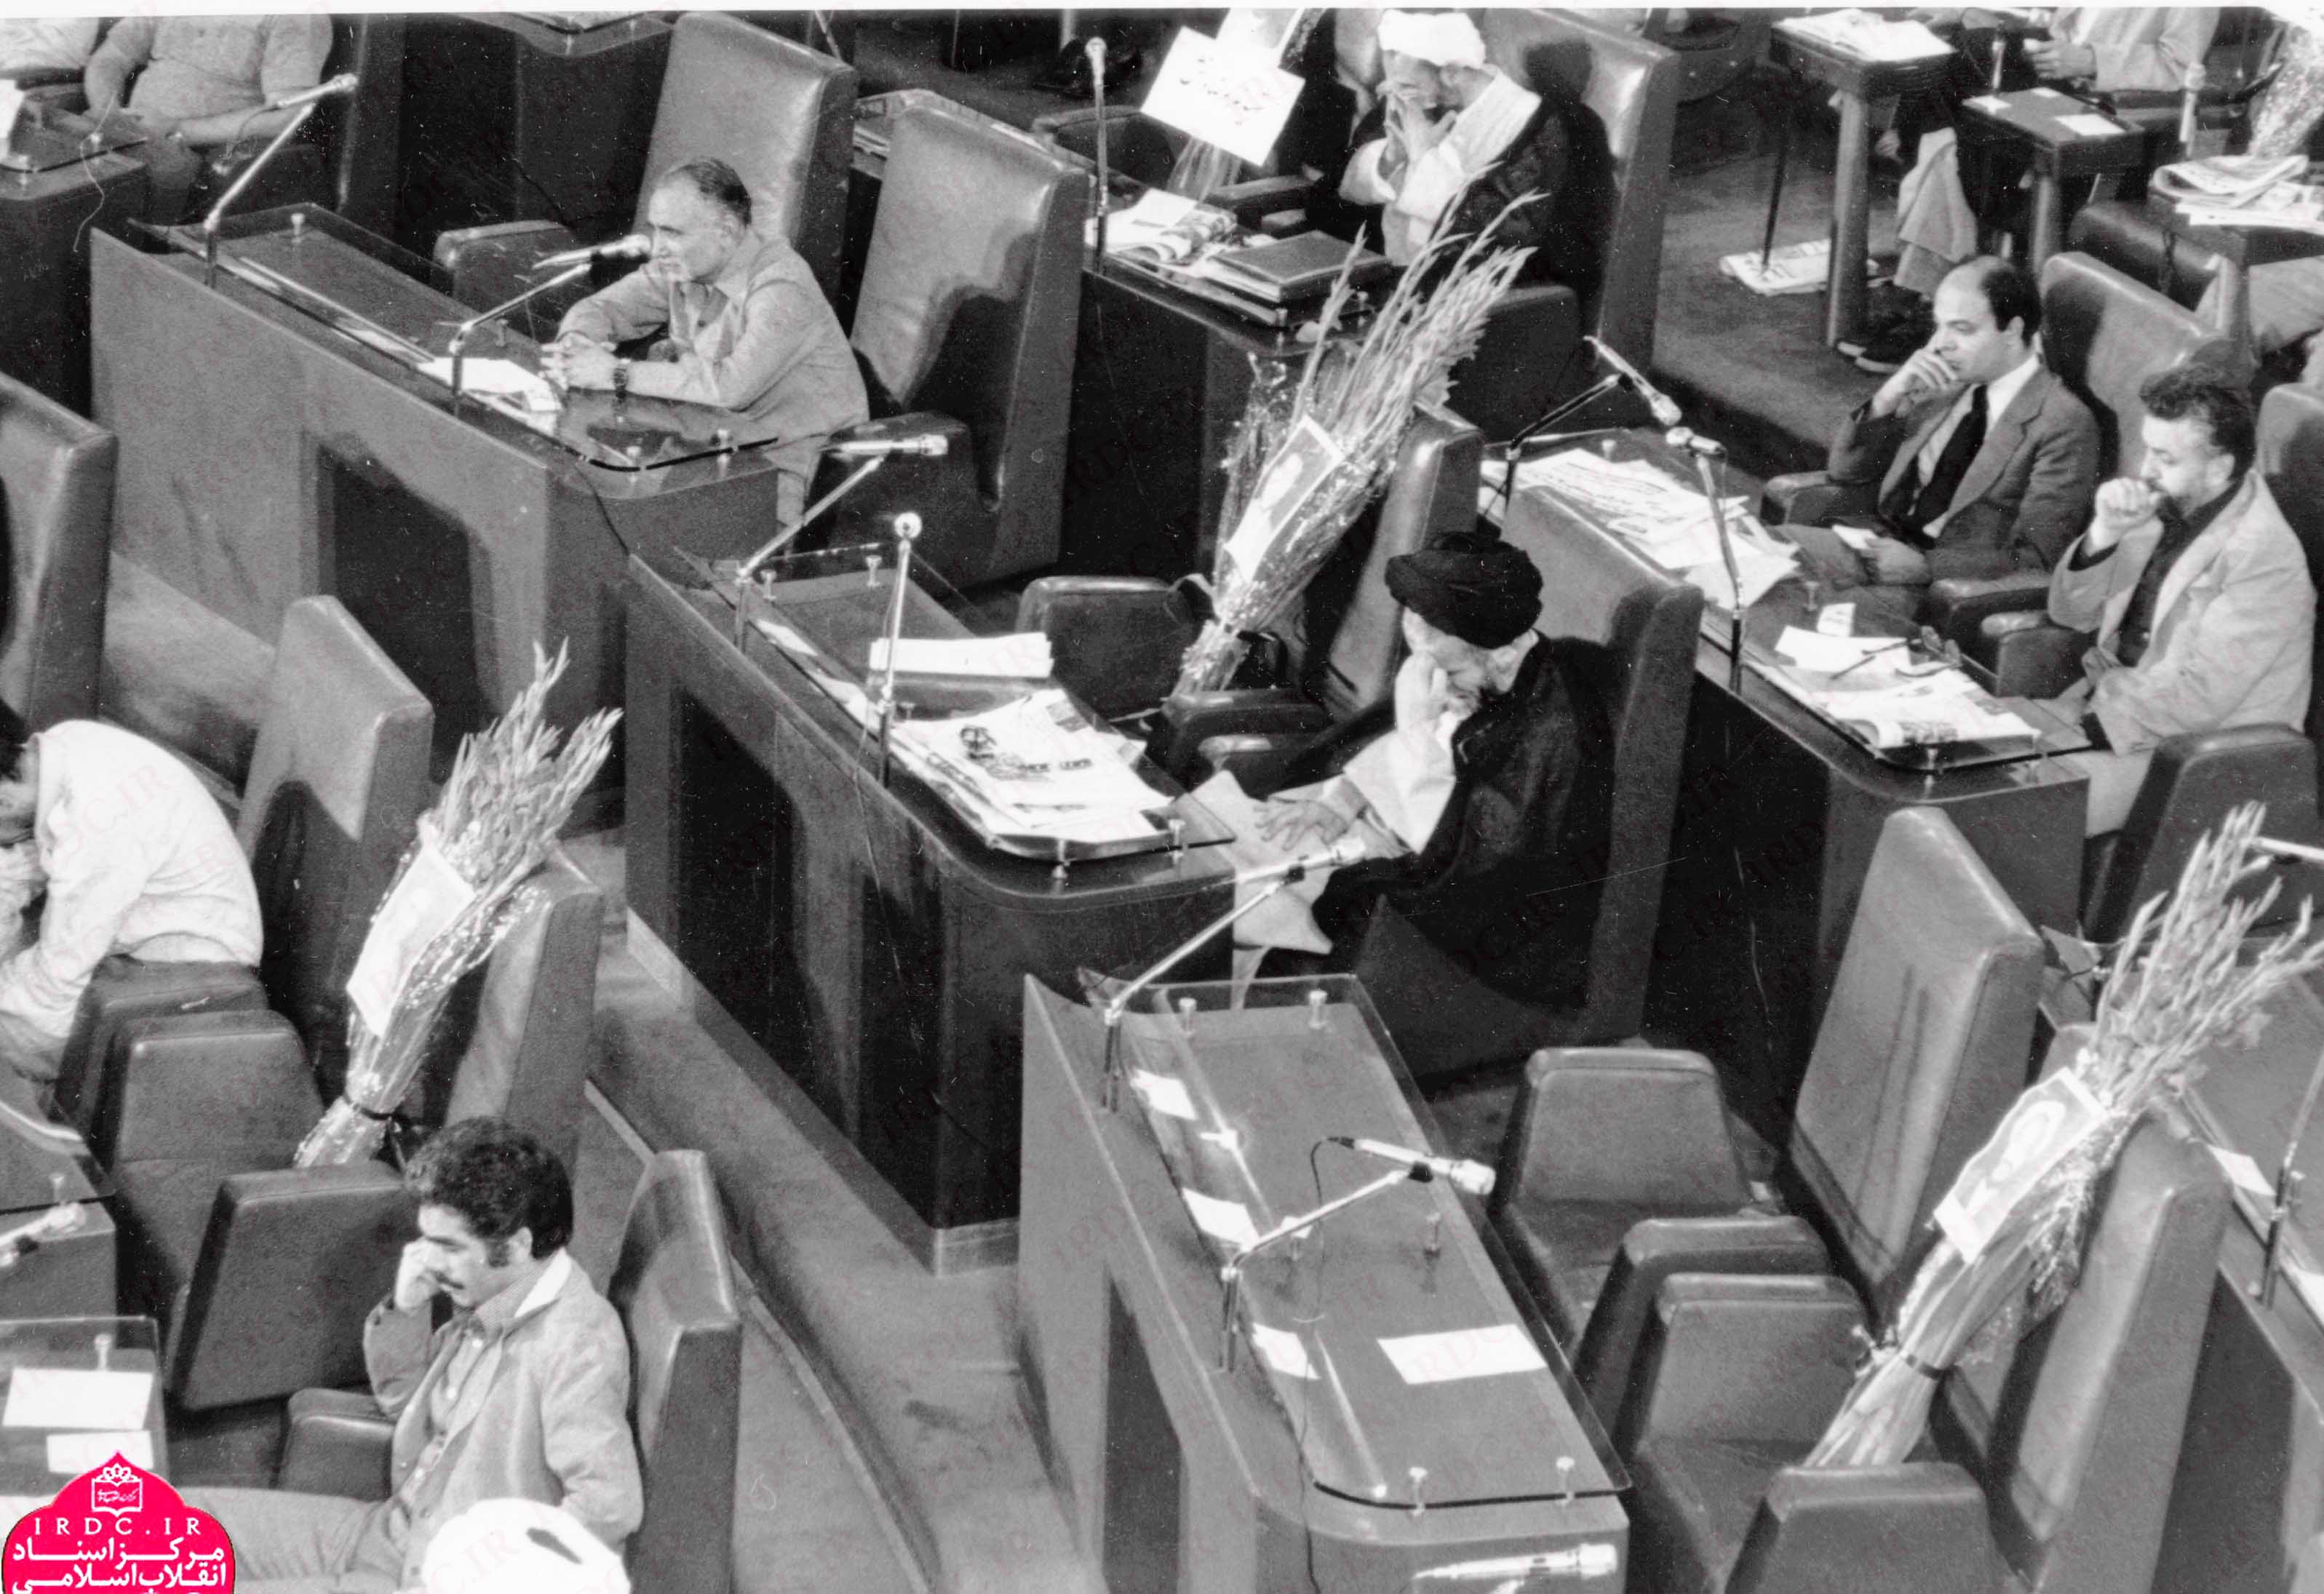 تصاویر اولین جلسه مجلس پس از حادثه هفتم تیر